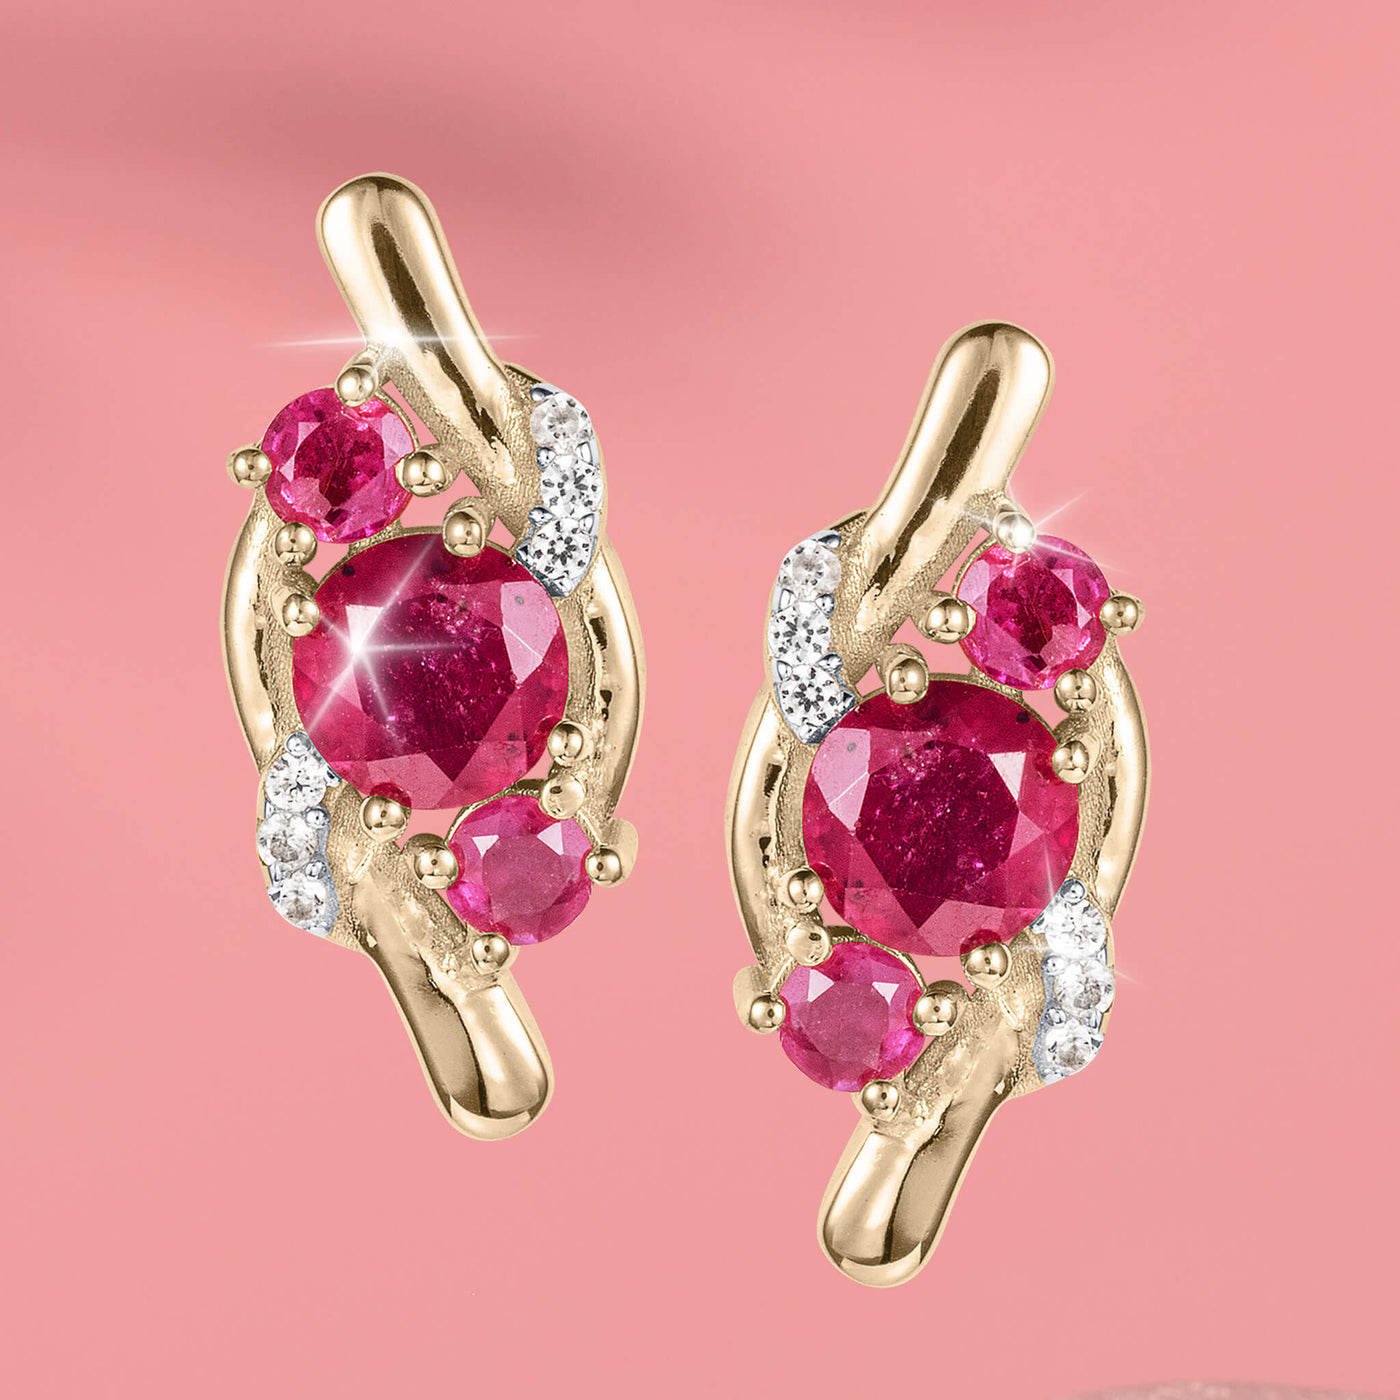 Ruby Glow Earrings